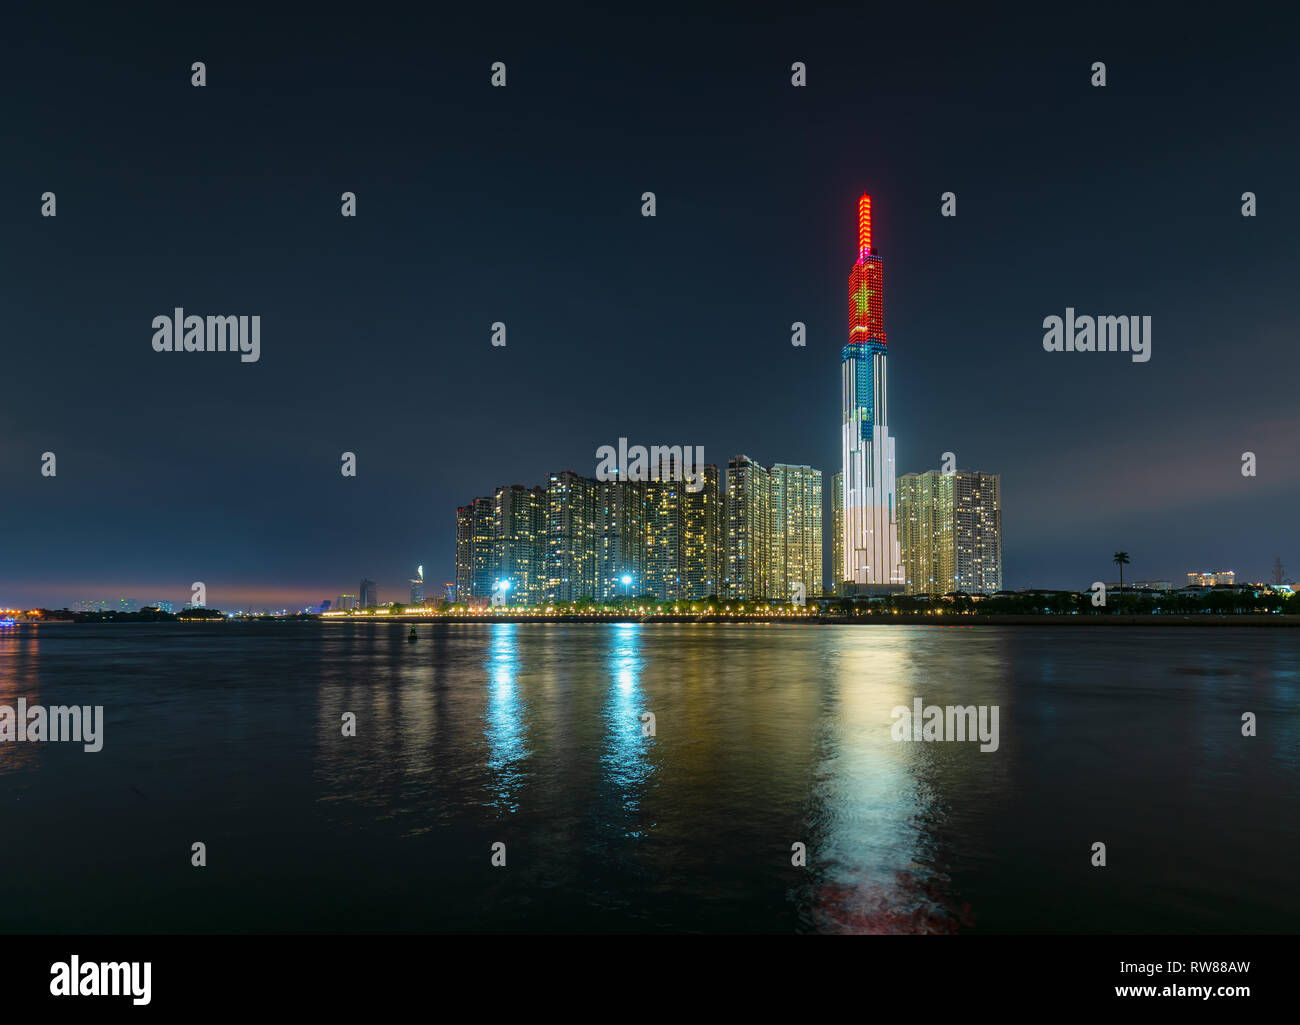 Colorido paisaje arquitectónico de la escena nocturna de rascacielos a lo largo del río con muchas luces brillantes para acoger el Año Nuevo Lunar 2019 Foto de stock